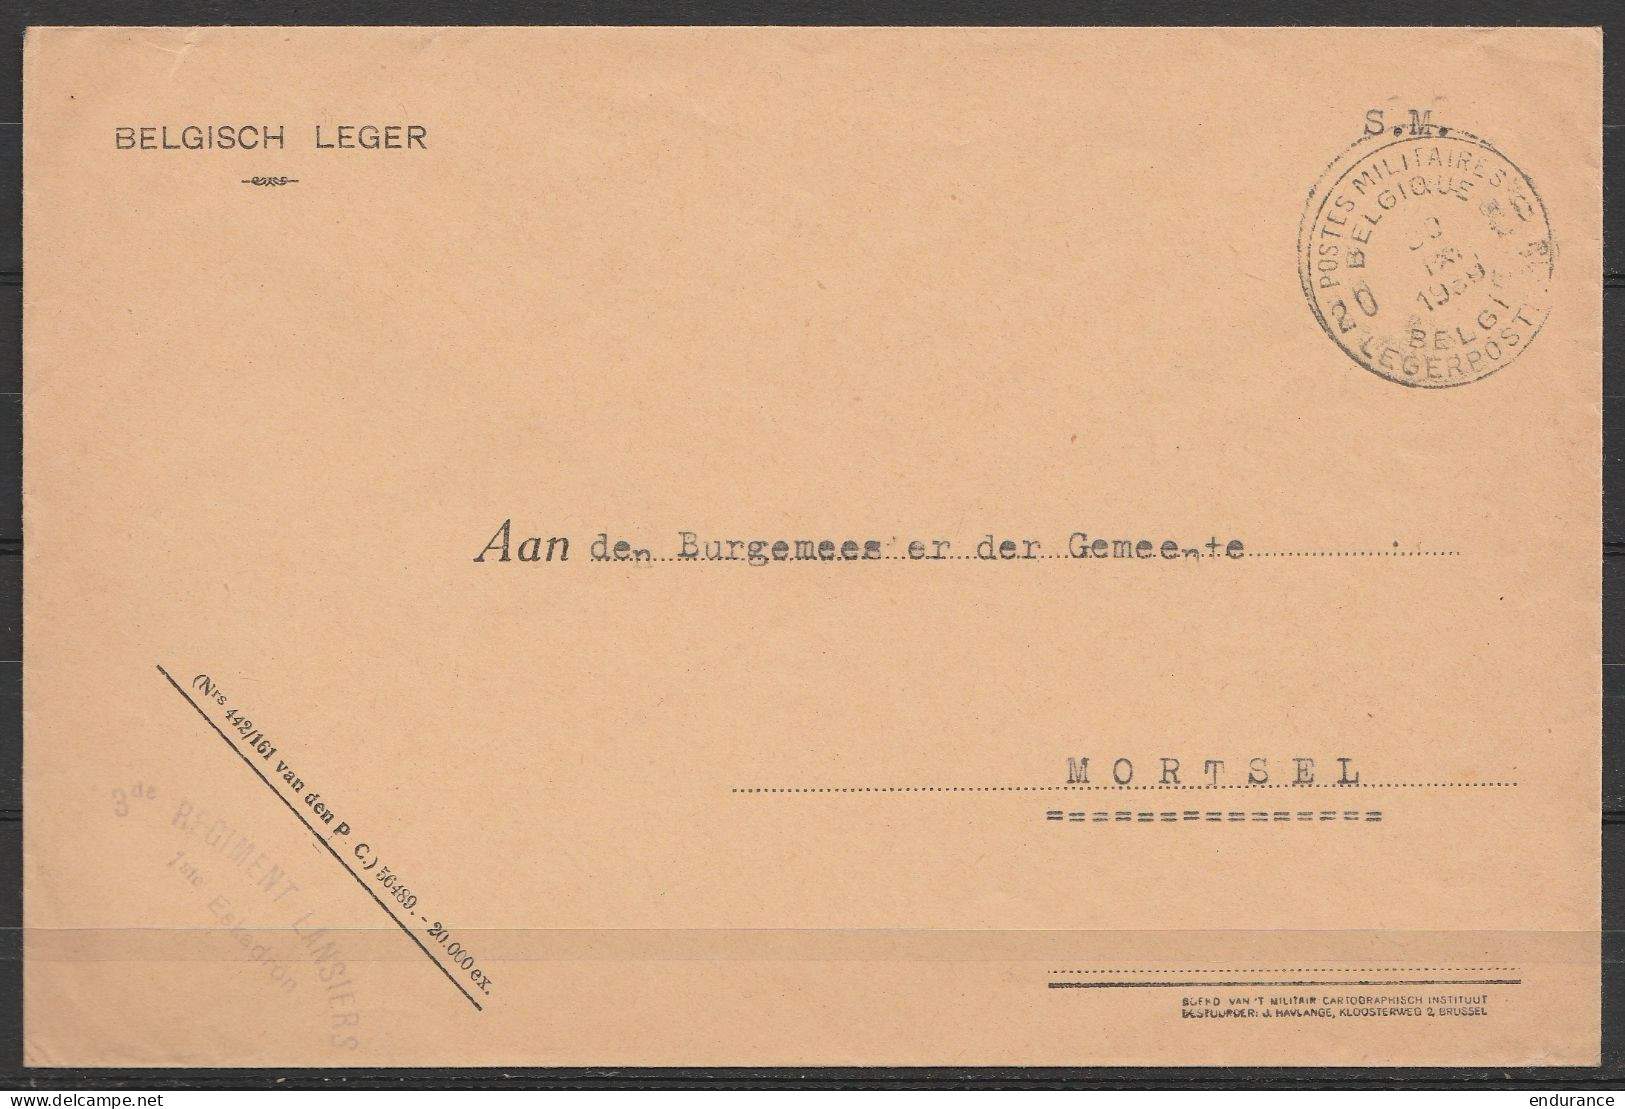 L. Entête "Belgisch Leger" En S.M. (Service Militaire) Franchise - Càd POSTES MILITAIRES BELGIQUE 20/30 IX 1939 - Griffe - Storia Postale